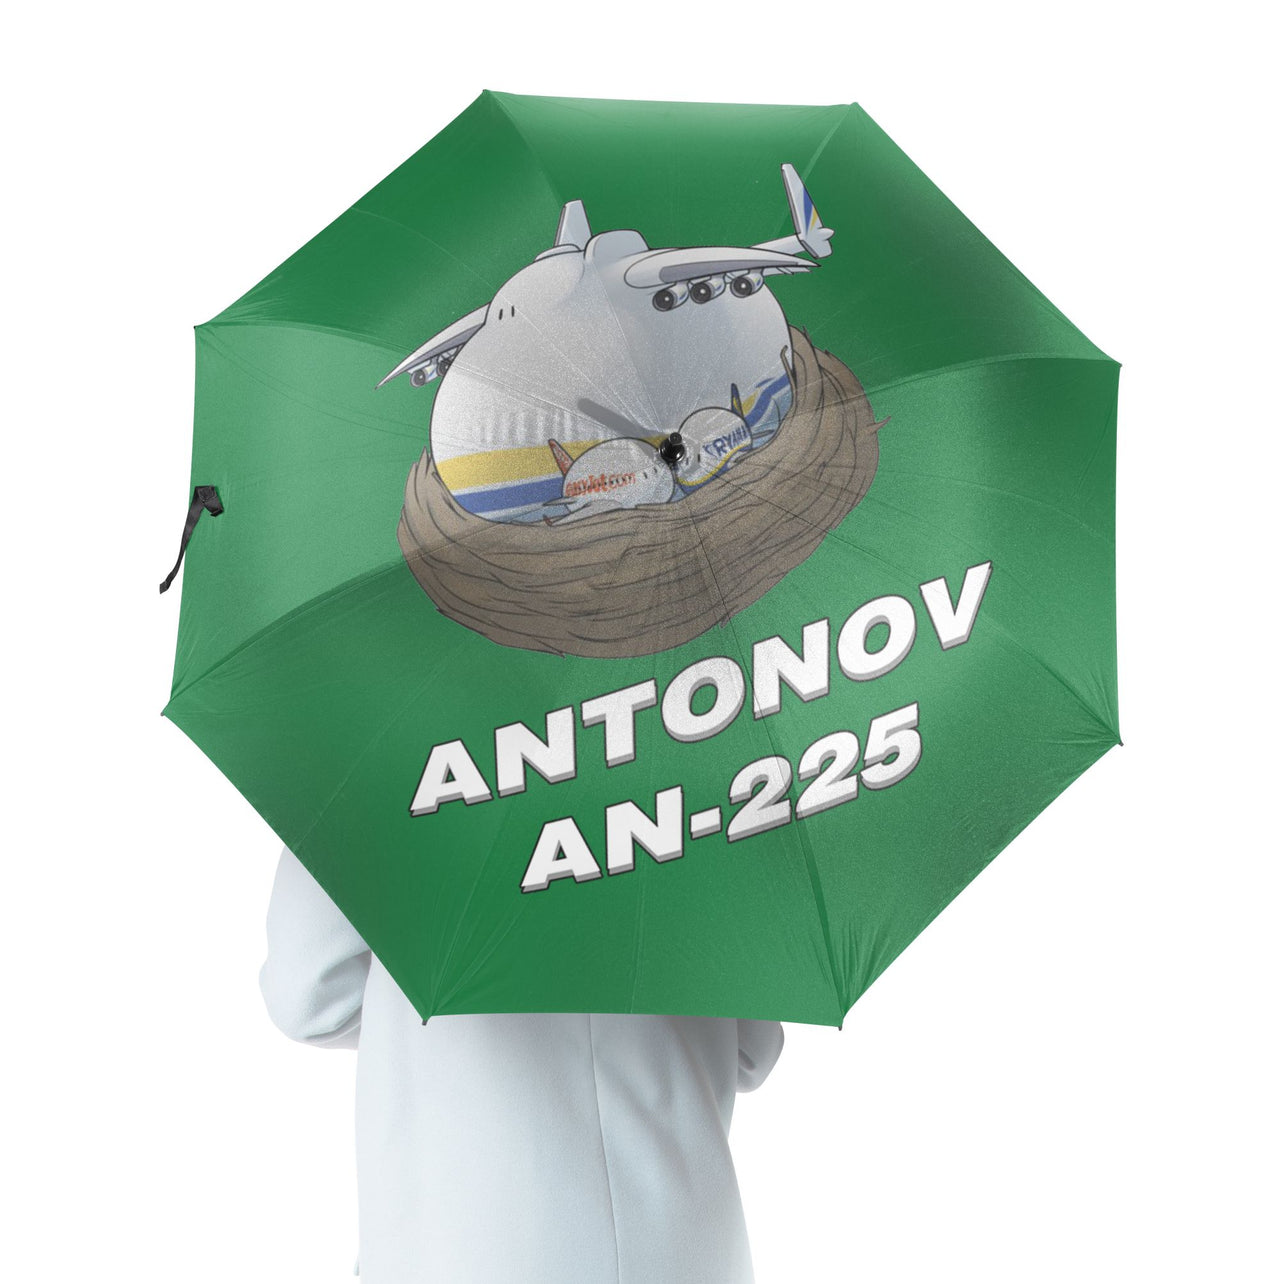 Antonov AN-225 (22) Designed Umbrella